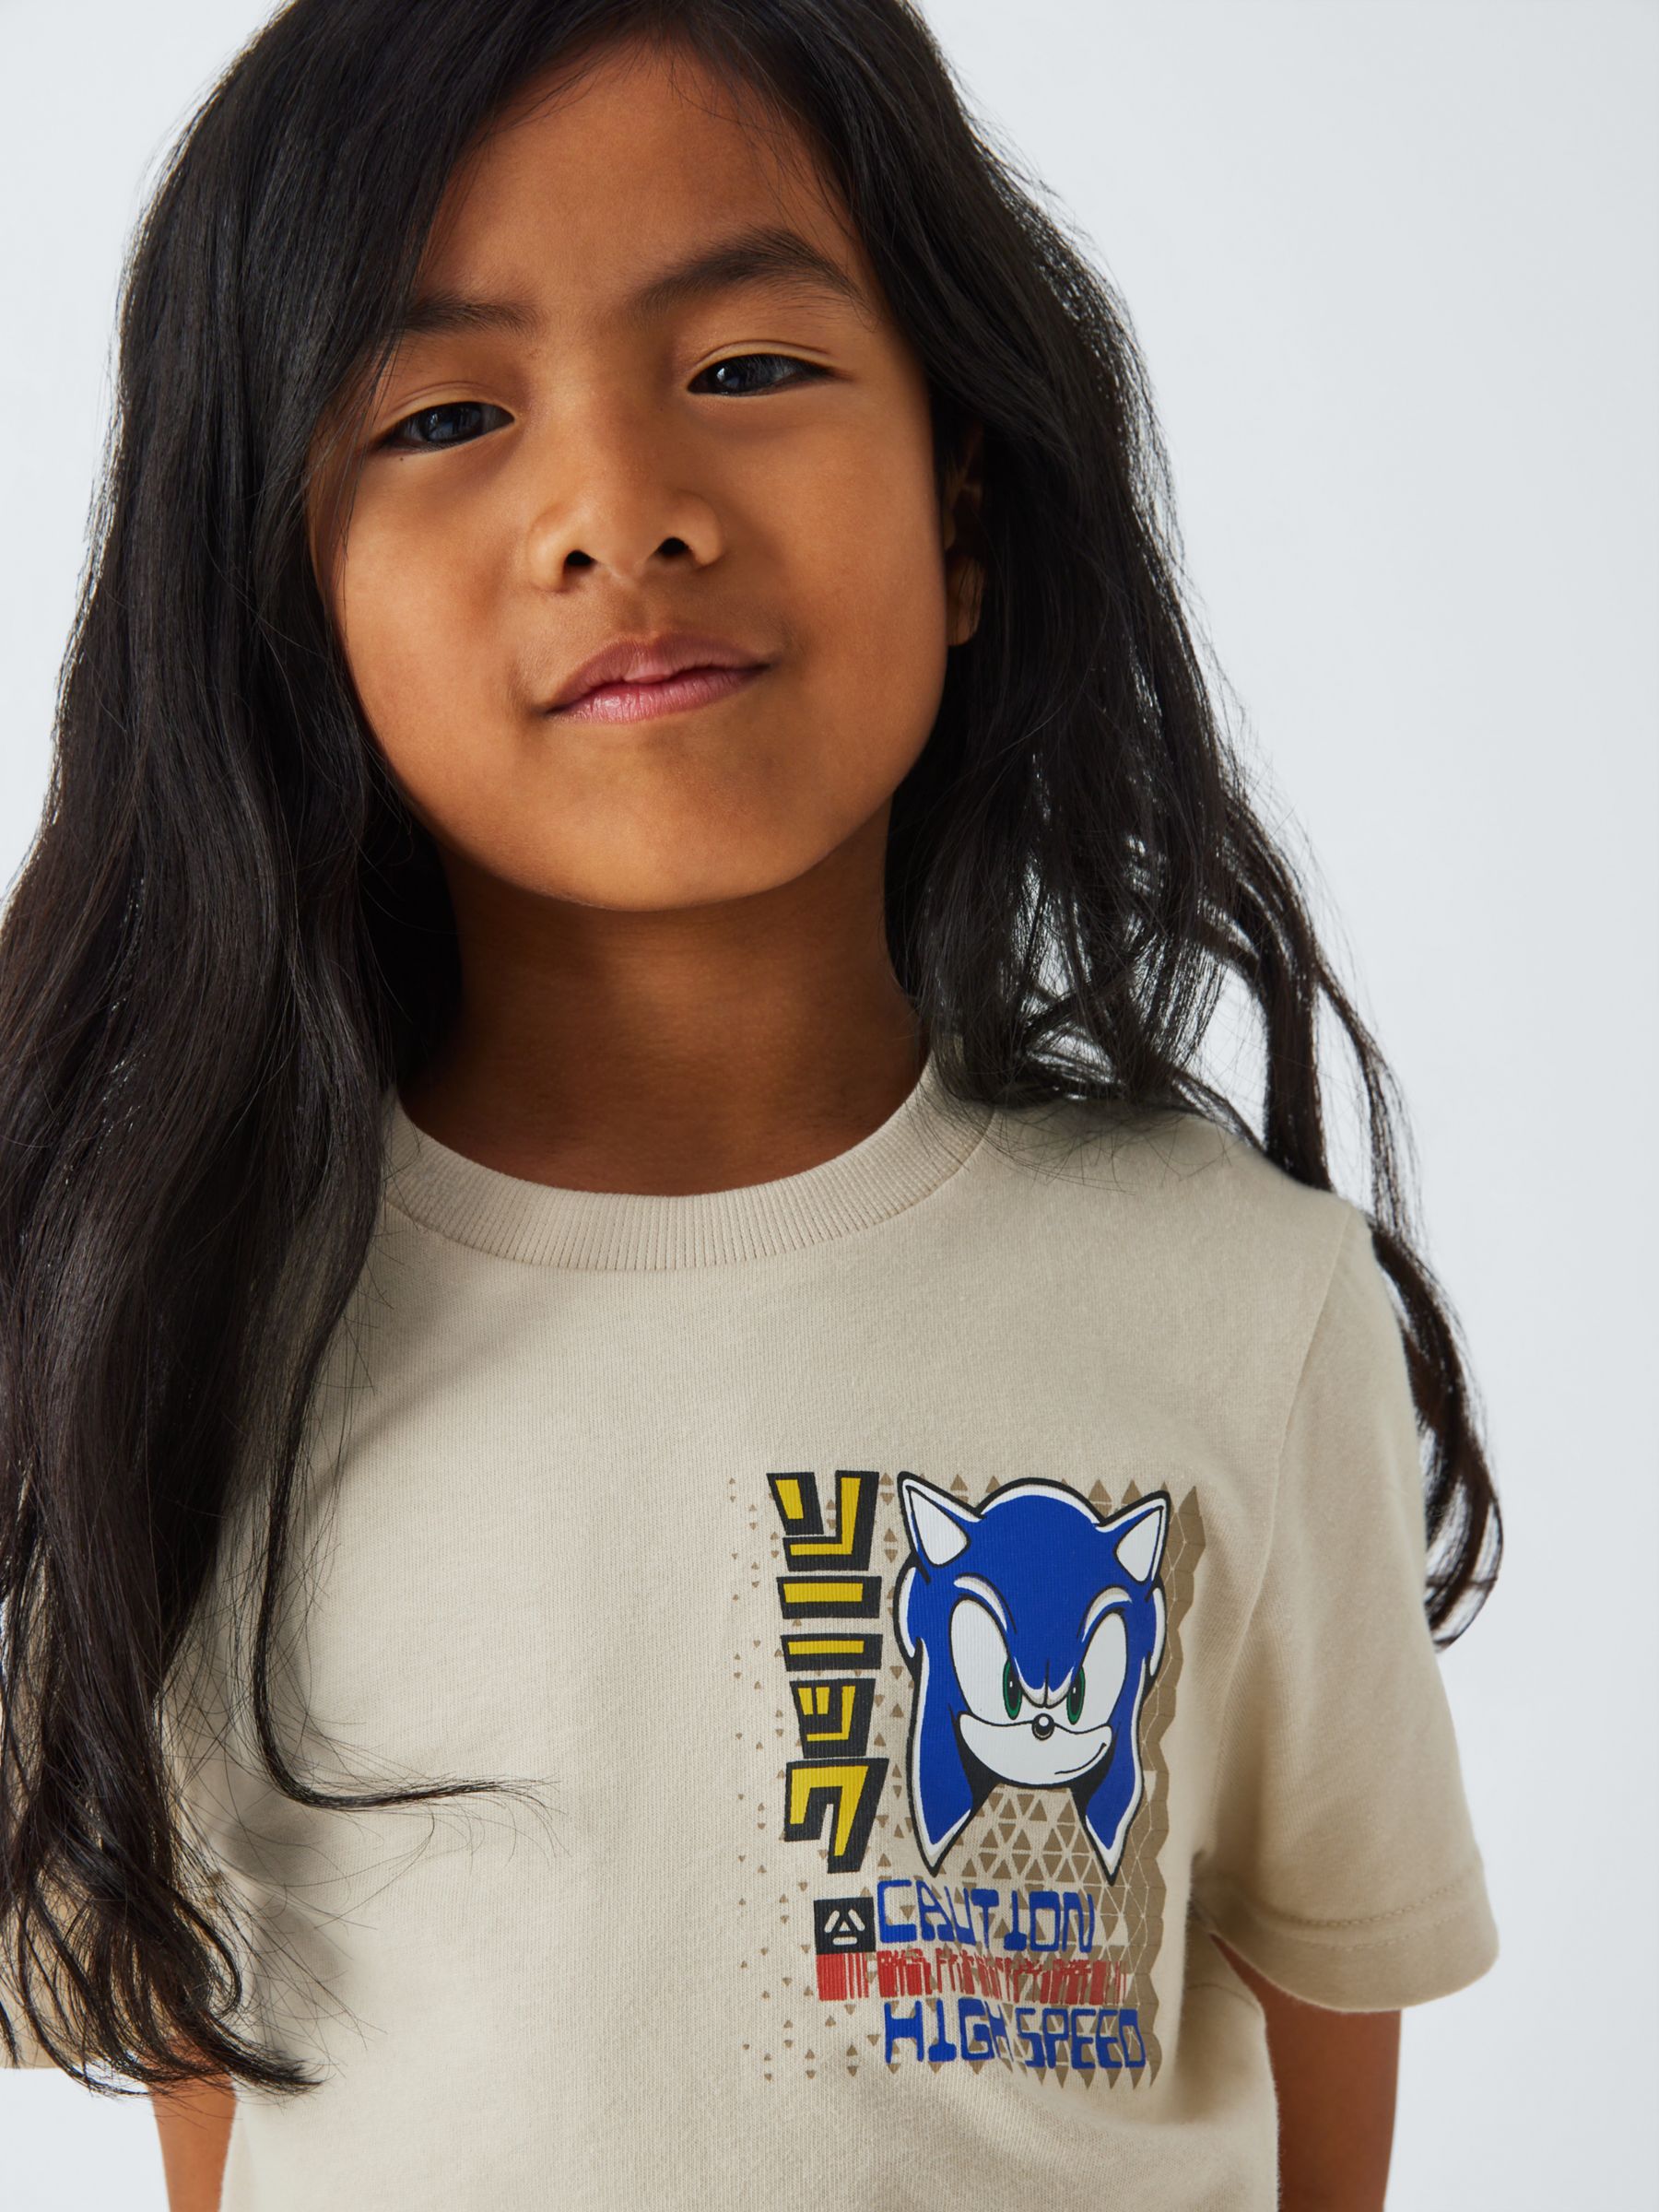 Brand Threads Kids' Sonic Graphic T-Shirt, Tan, 4-5 years